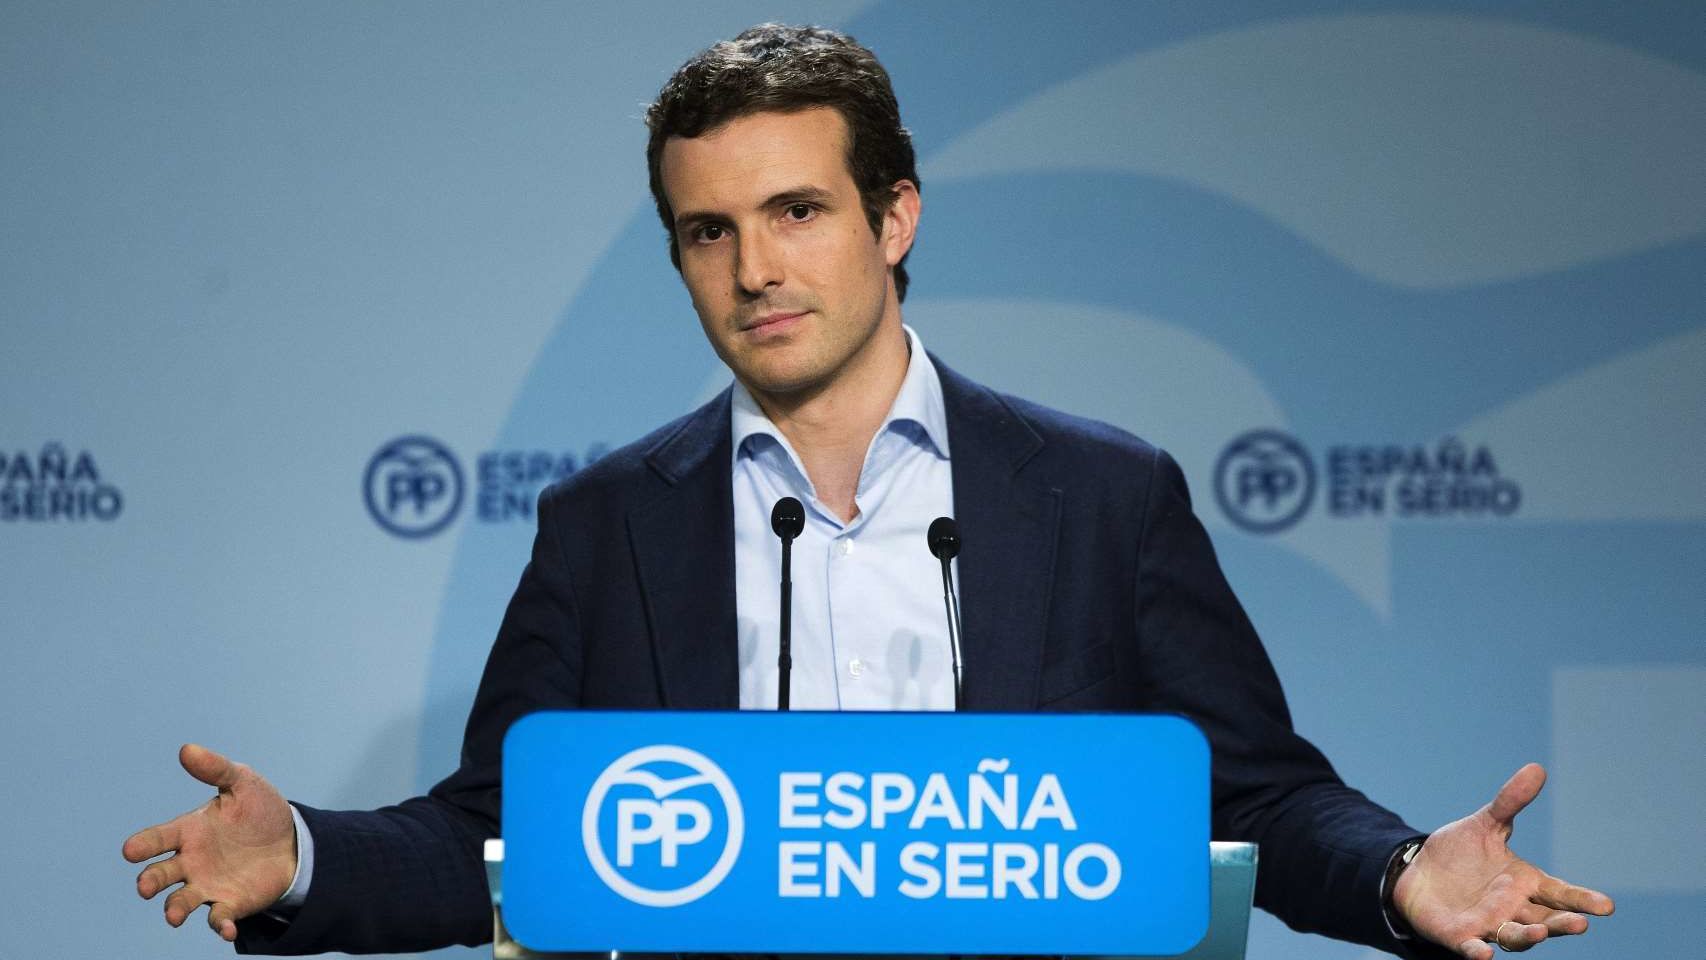 Pablo_Casado-PP_Partido_Popular-Mariano_Rajoy_Brey-Espana_93750754_420913_1706x960